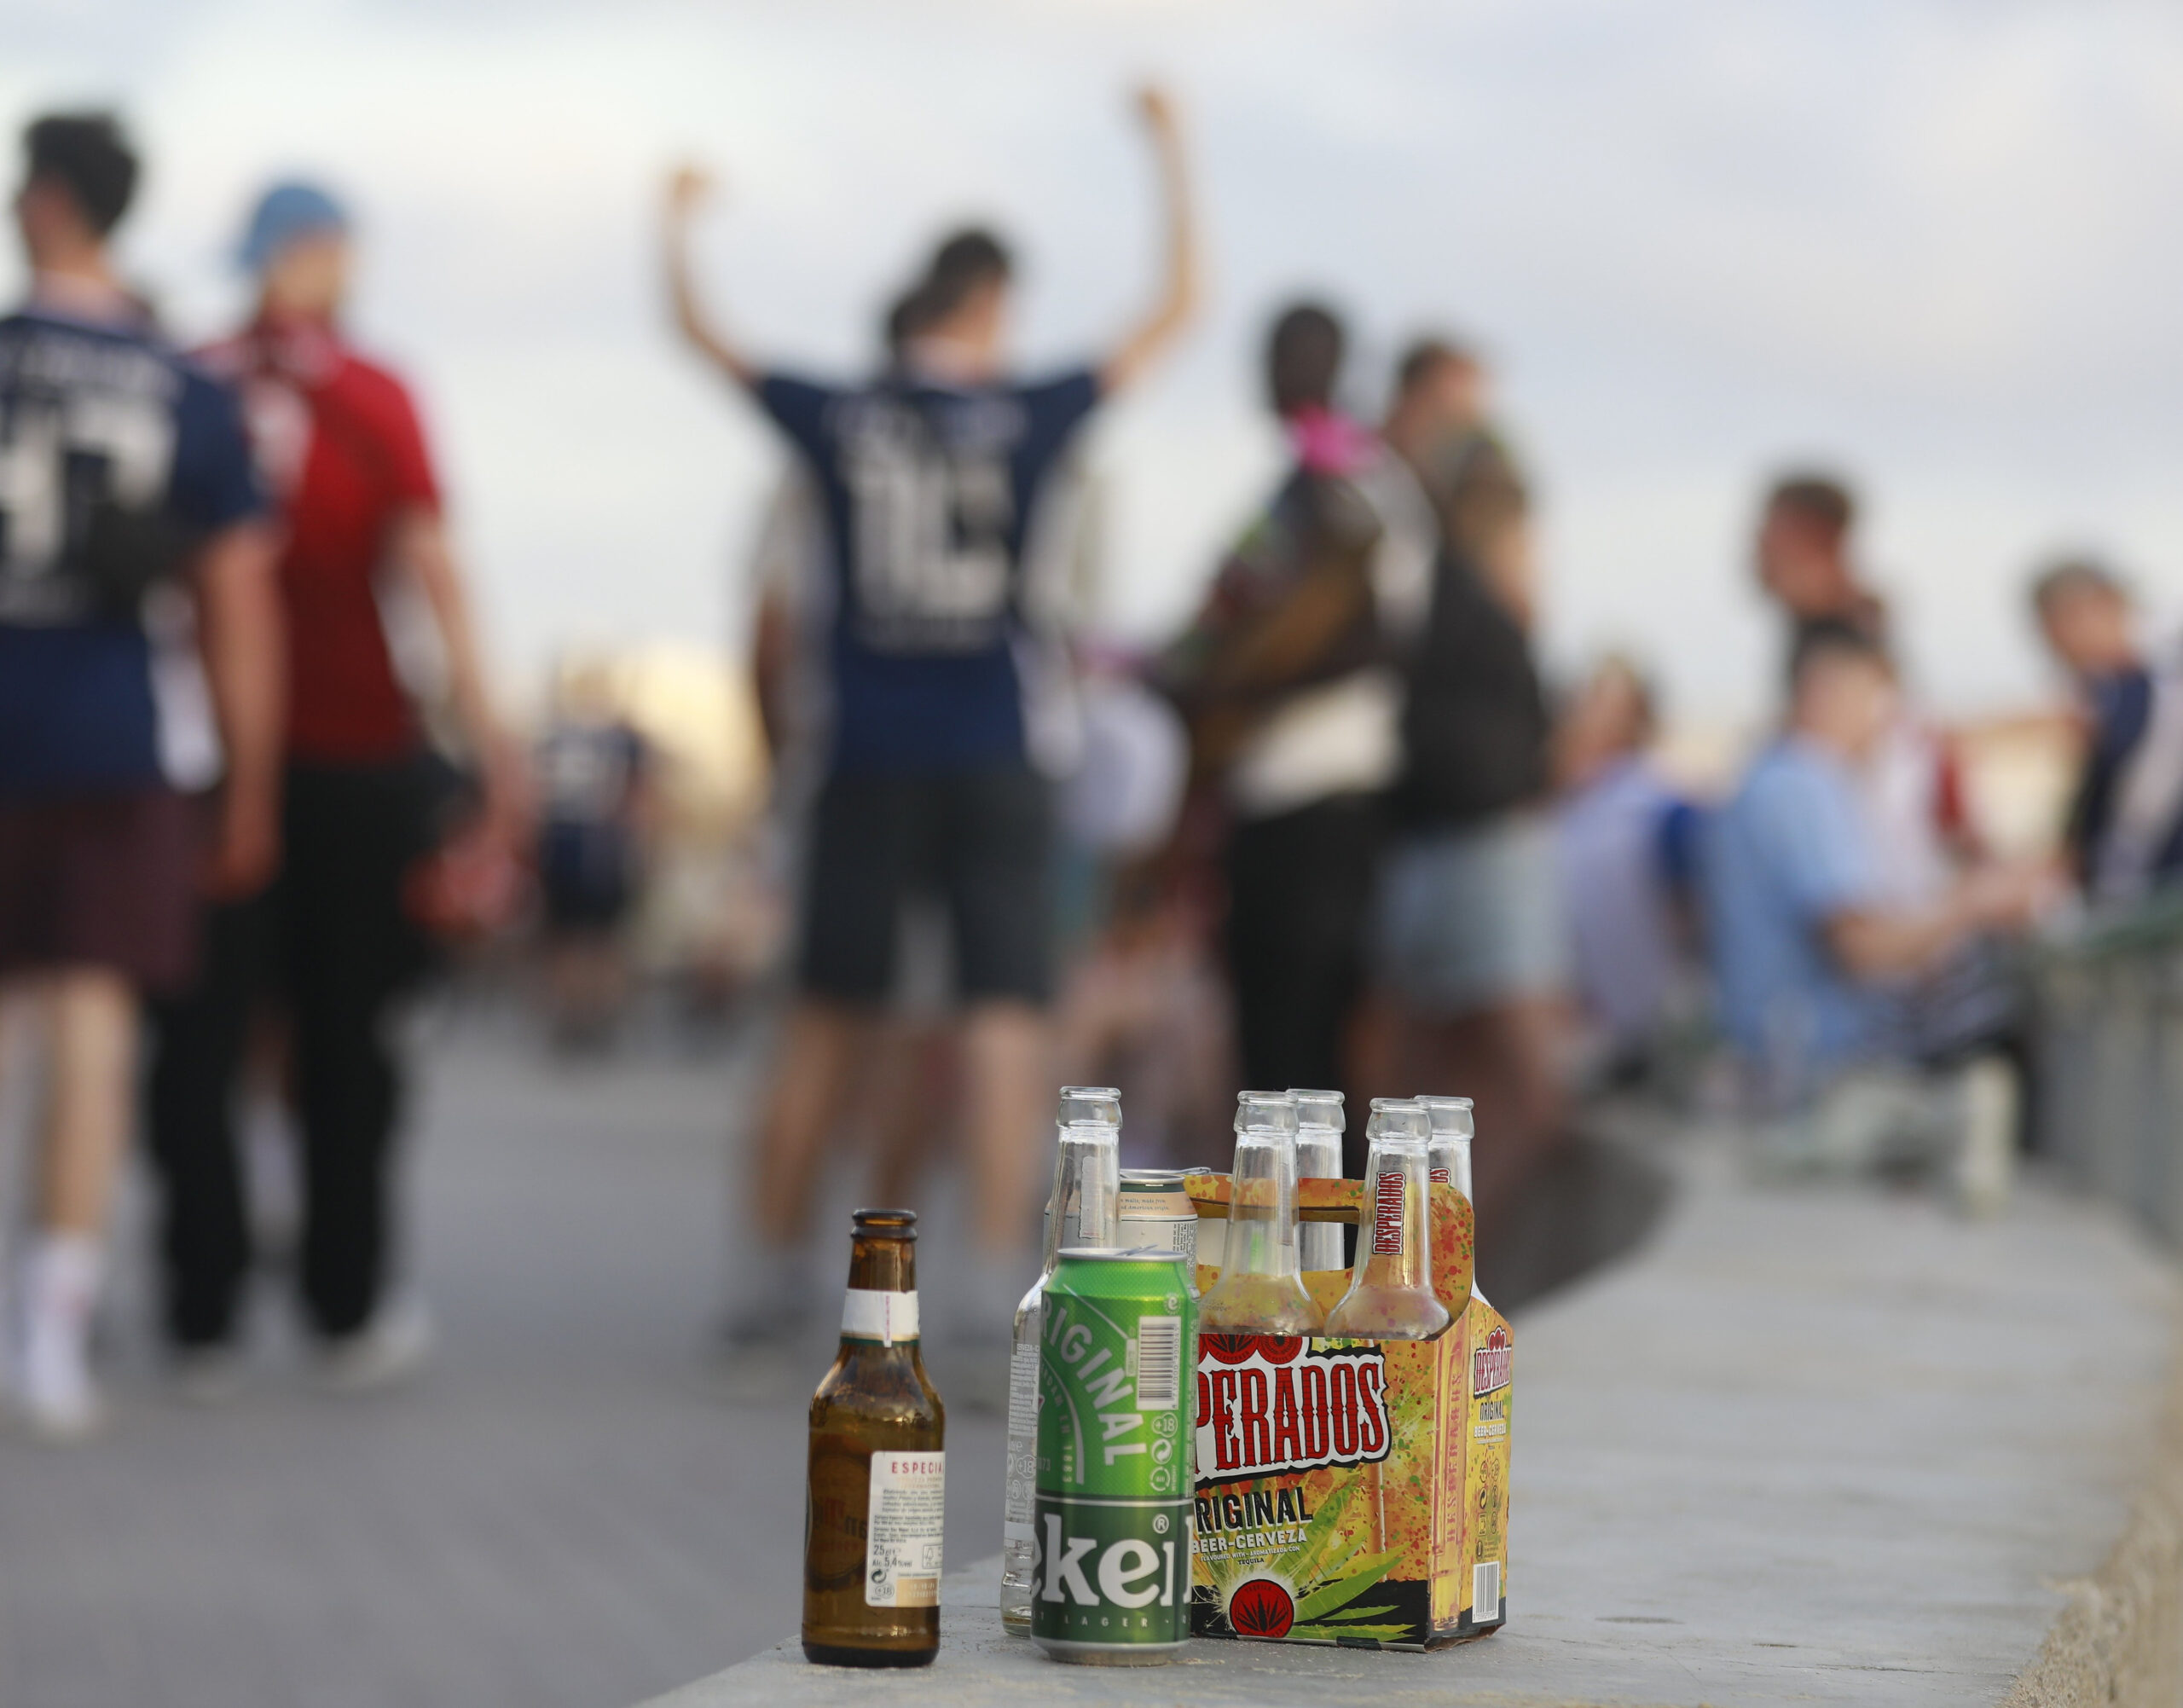 Menschen haben sich am Abend an der Promenade am Strand von Arenal versammelt. Auf einer Balustrade stehen mehrere leere Flachen alkoholischer Getränke.